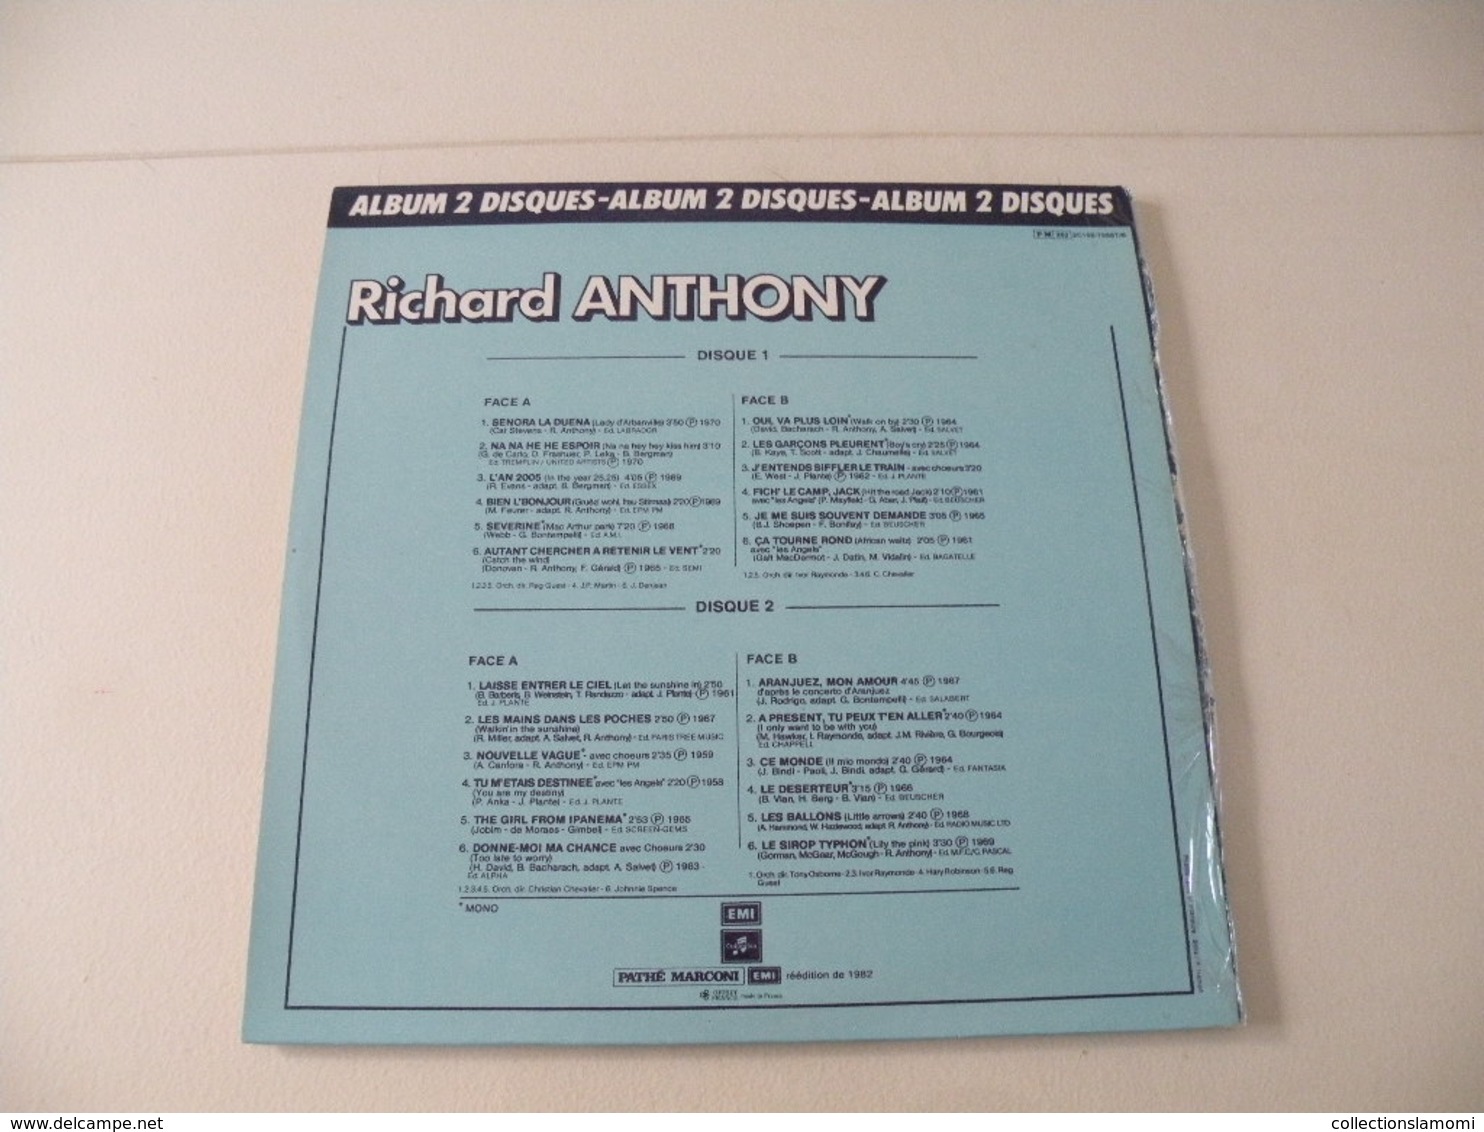 Richard Anthony 1970/65/69/61/62/63/64/59/67/58/66/68 - (Titres sur photos) - Vinyle 33 T LP double album